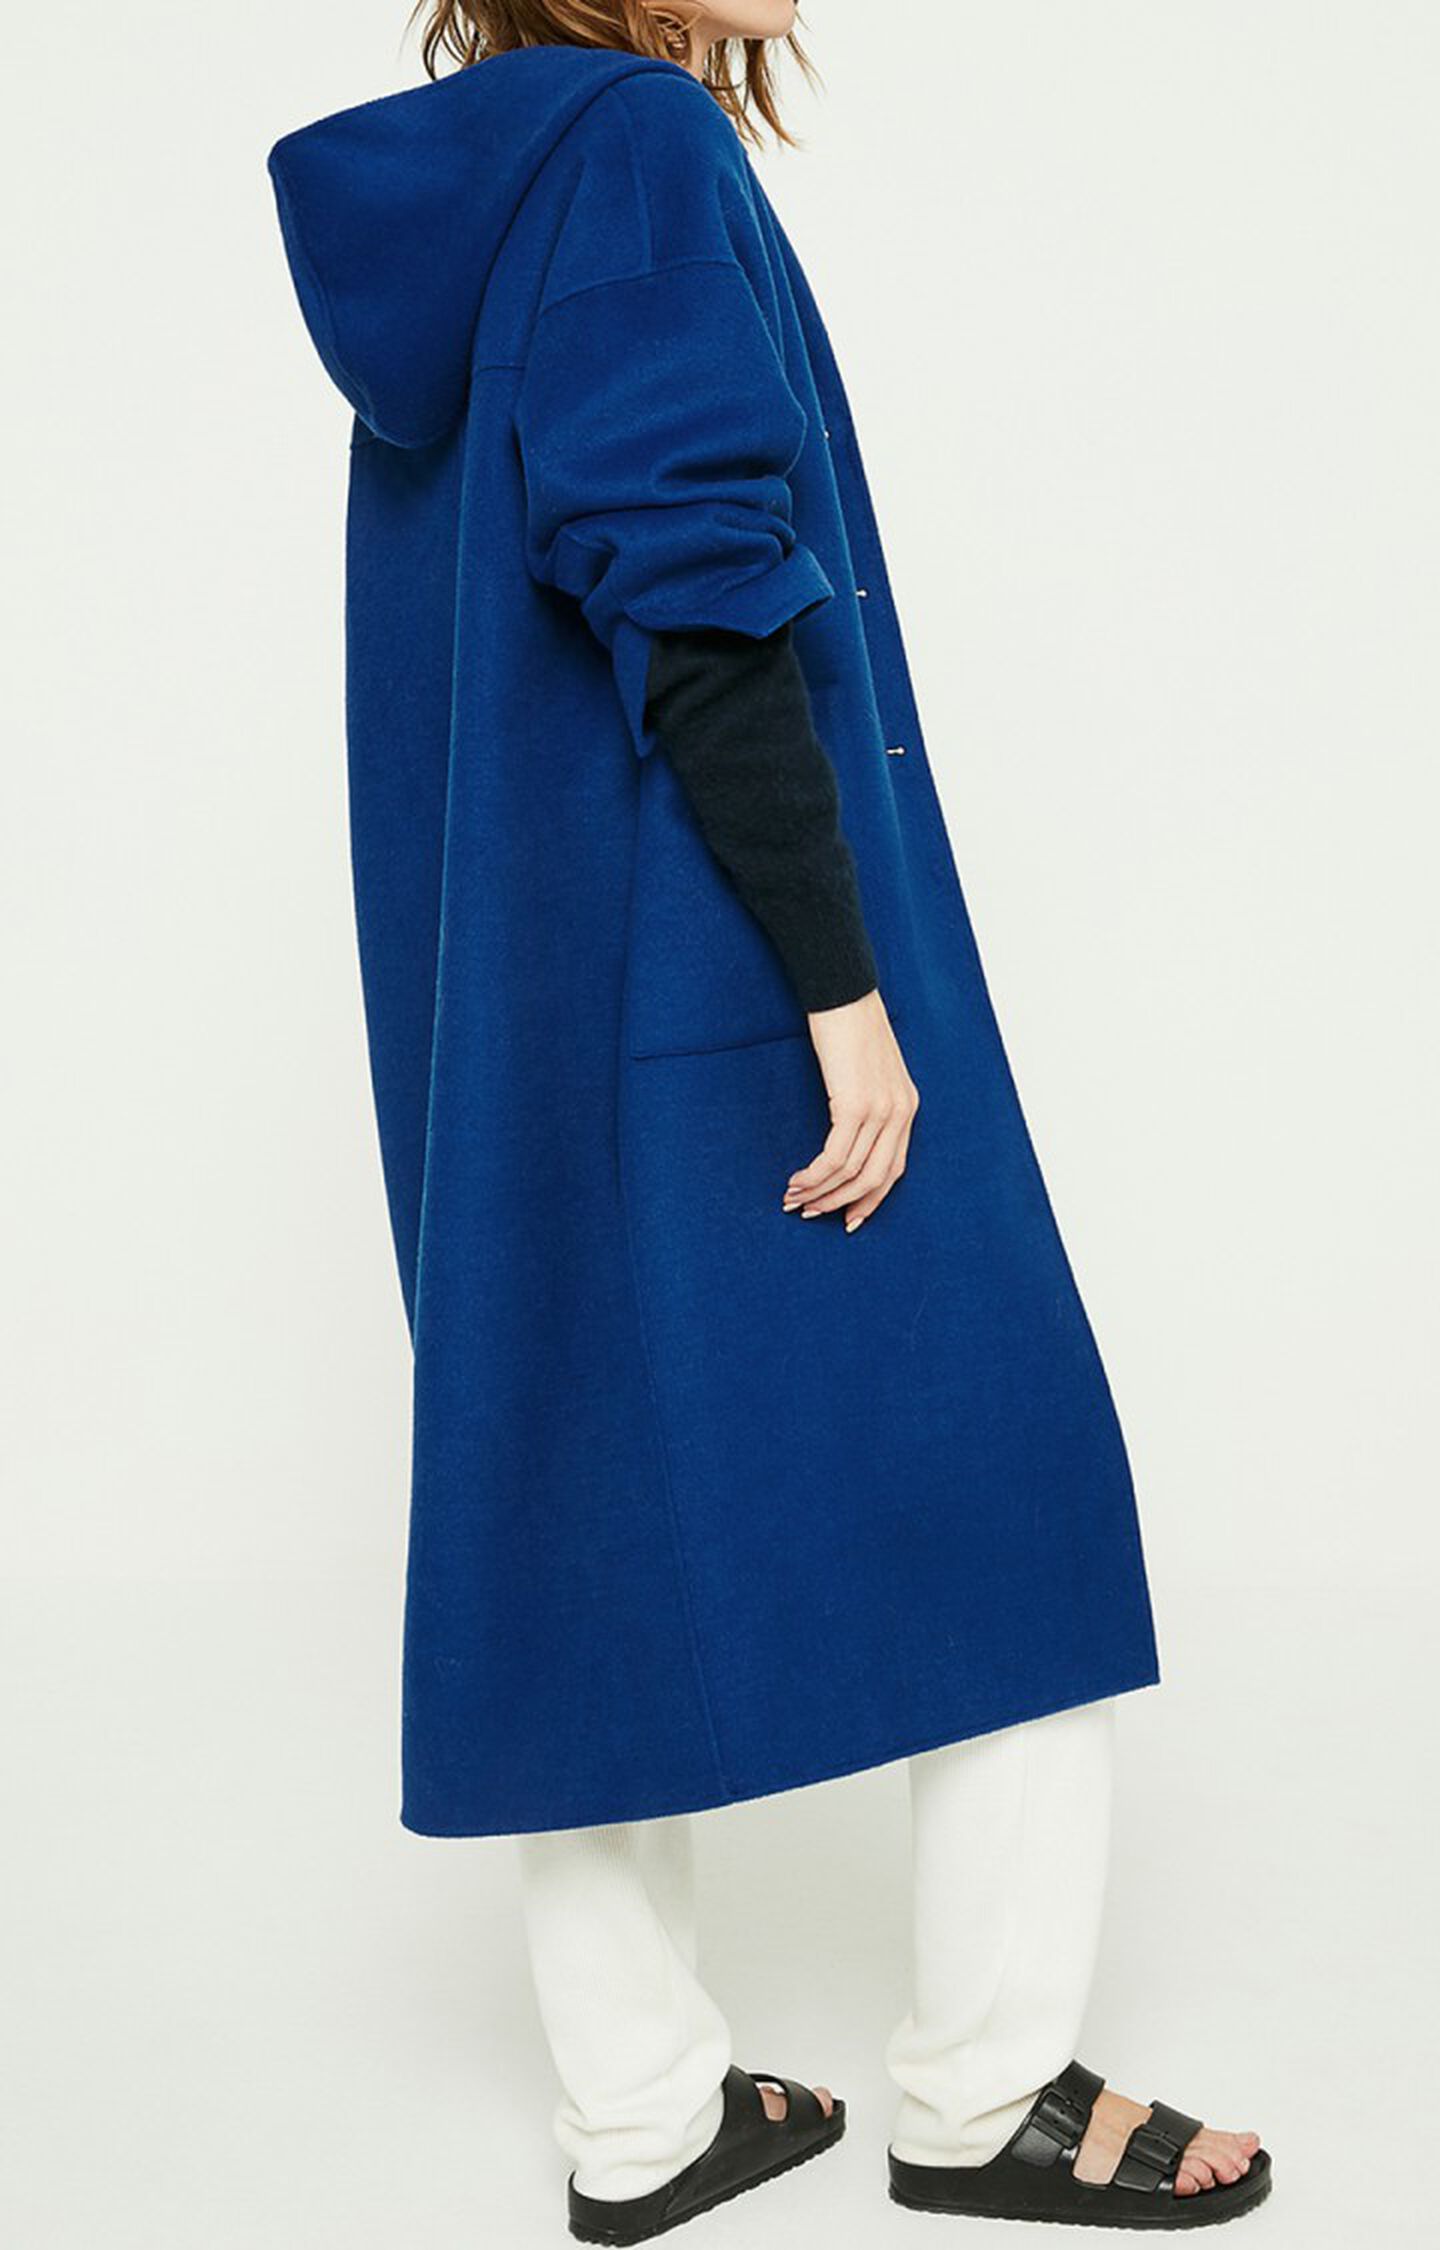 manteau femme bleu indigo